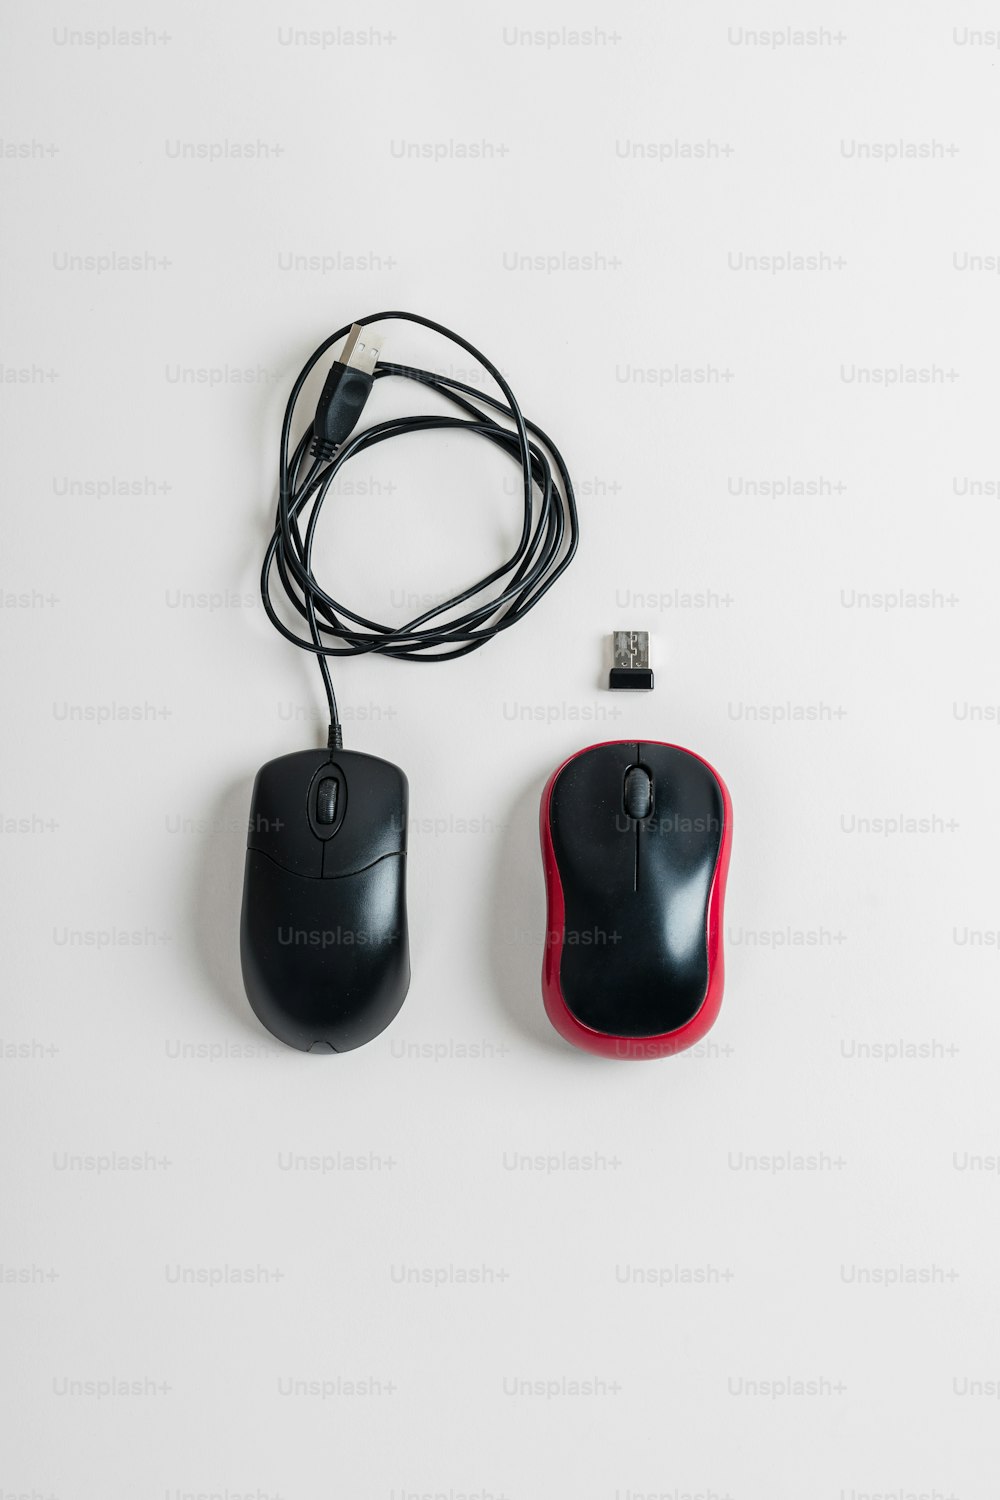 Une souris d’ordinateur noire et rouge à côté d’une souris USB